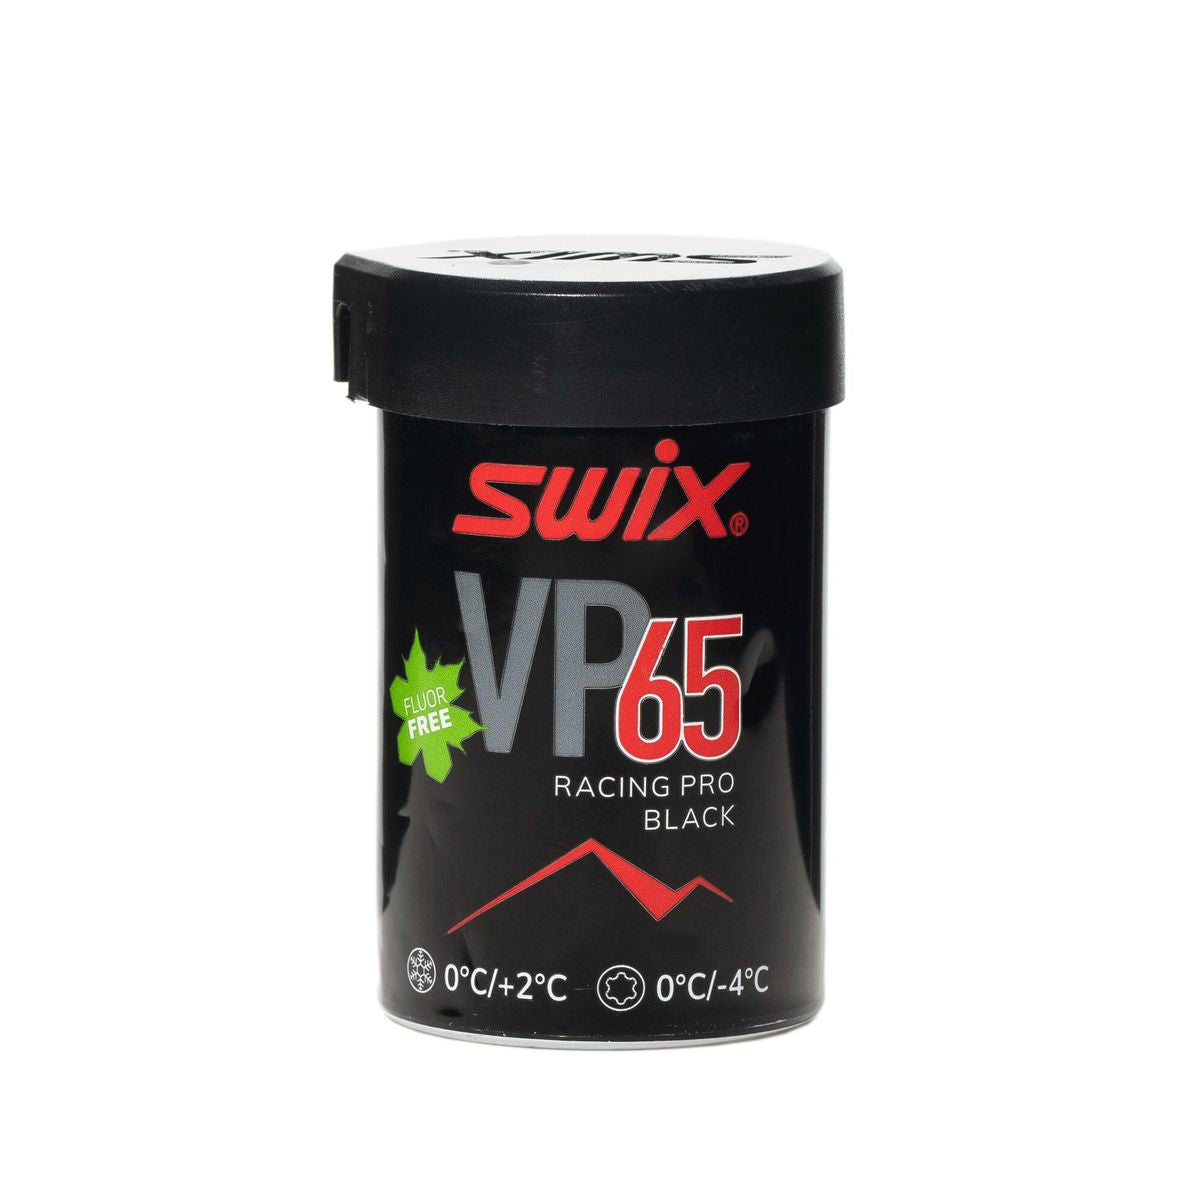 Vp65 Red-Black Kick Wax